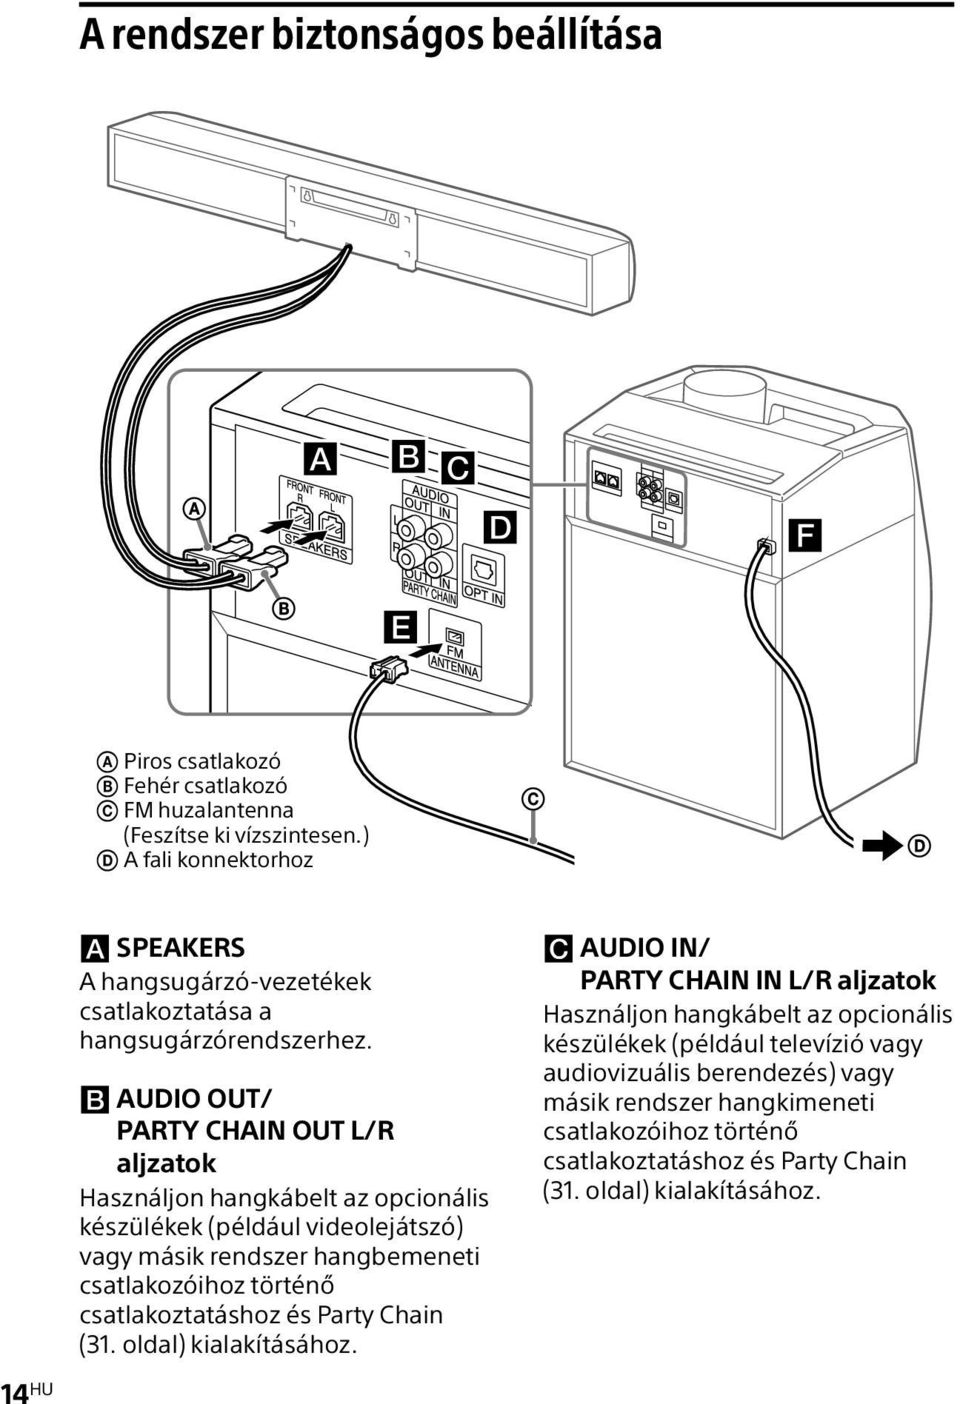 AUDIO OUT/ PARTY CHAIN OUT L/R aljzatok Használjon hangkábelt az opcionális készülékek (például videolejátszó) vagy másik rendszer hangbemeneti csatlakozóihoz történő